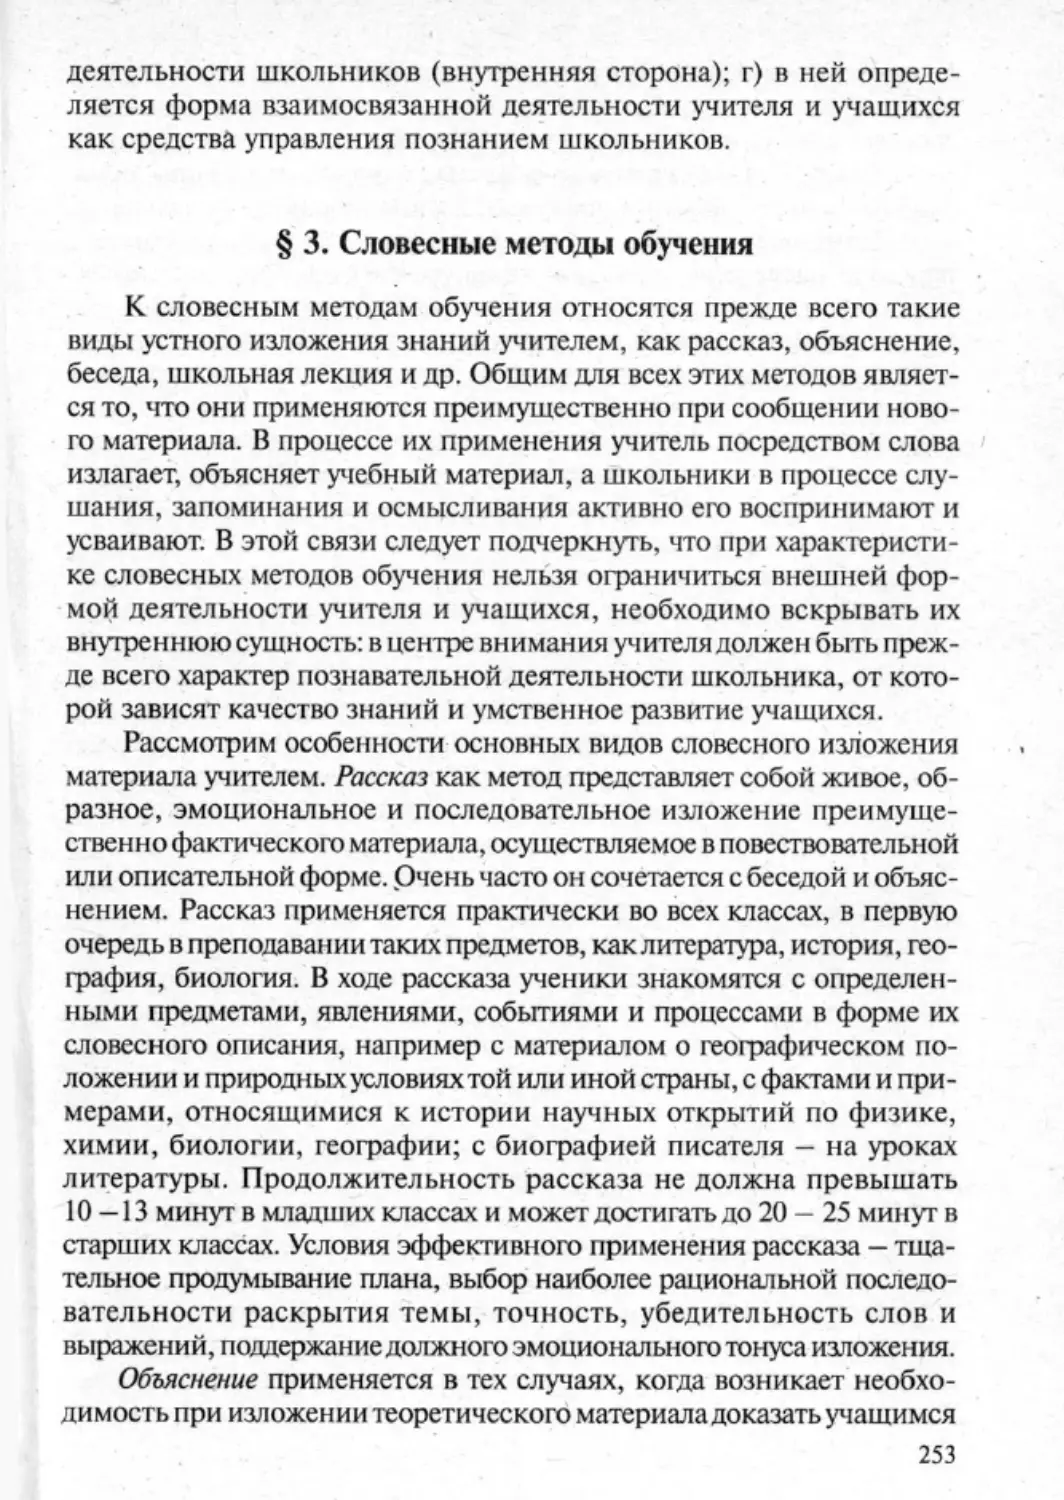 Загрекова Л.В., Николаева В.В - 0254